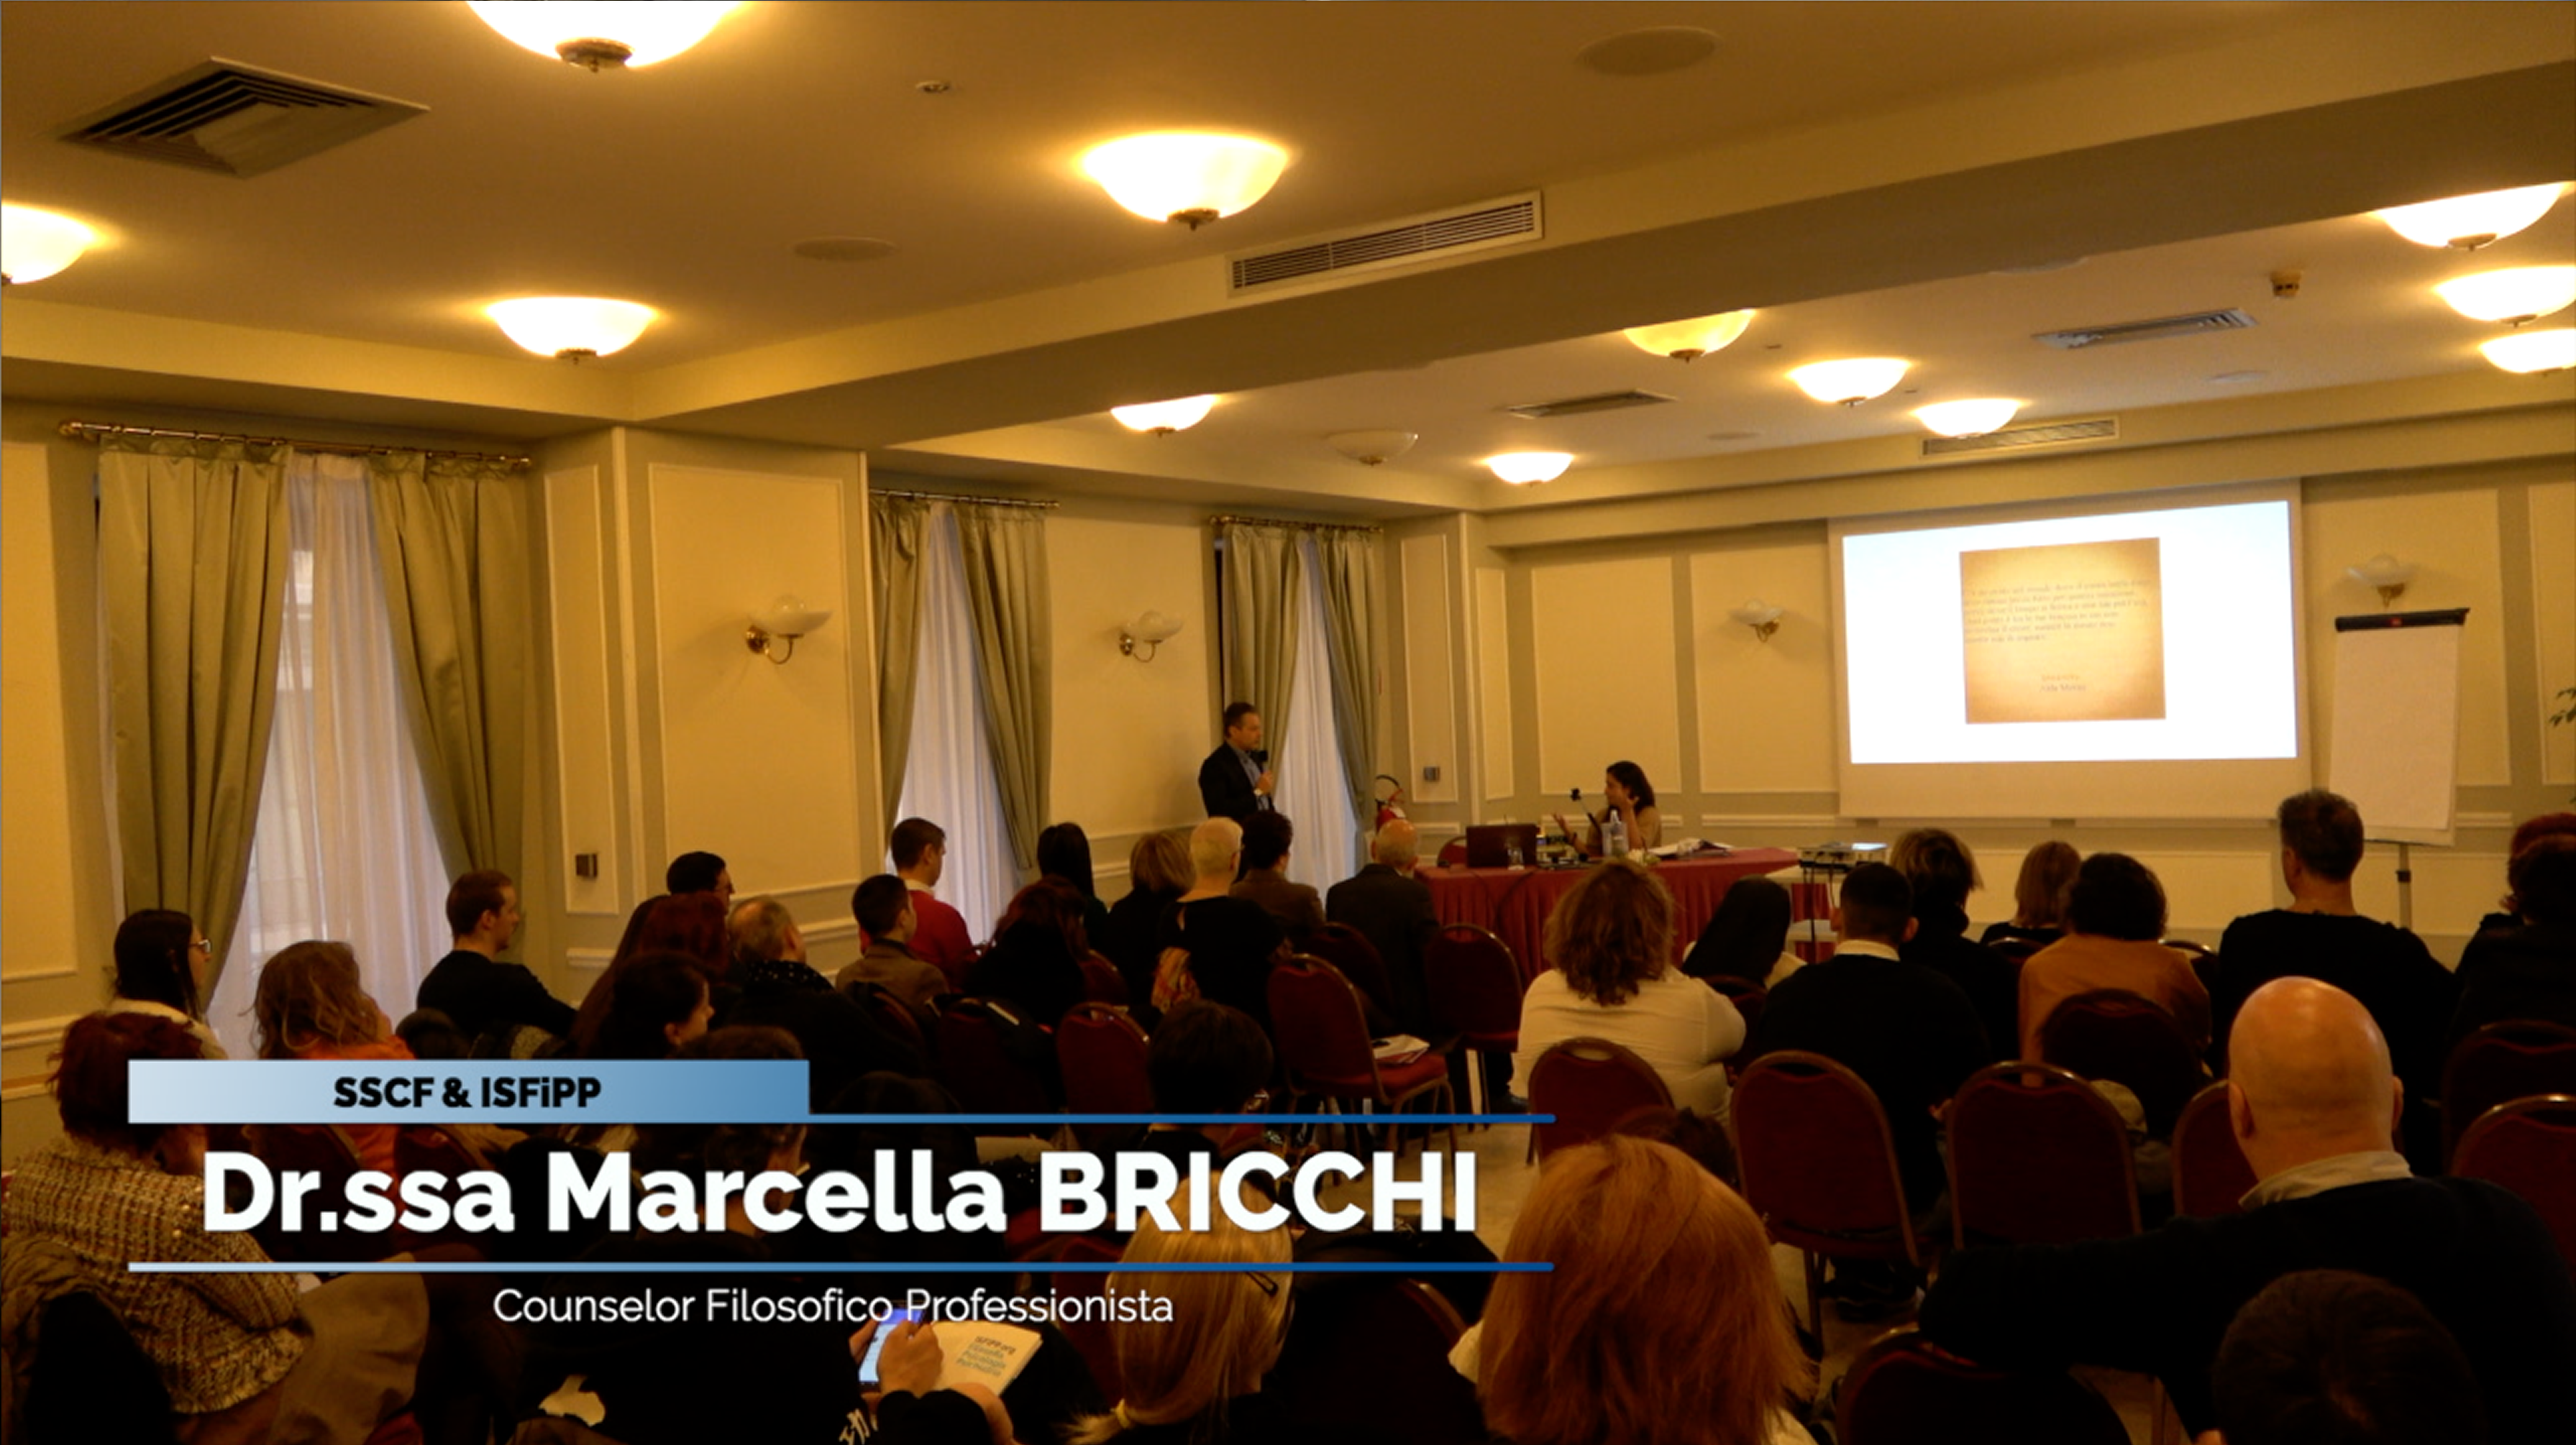 Dr.ssa Marcella Bricchi, Counselor Filosofico Professionista